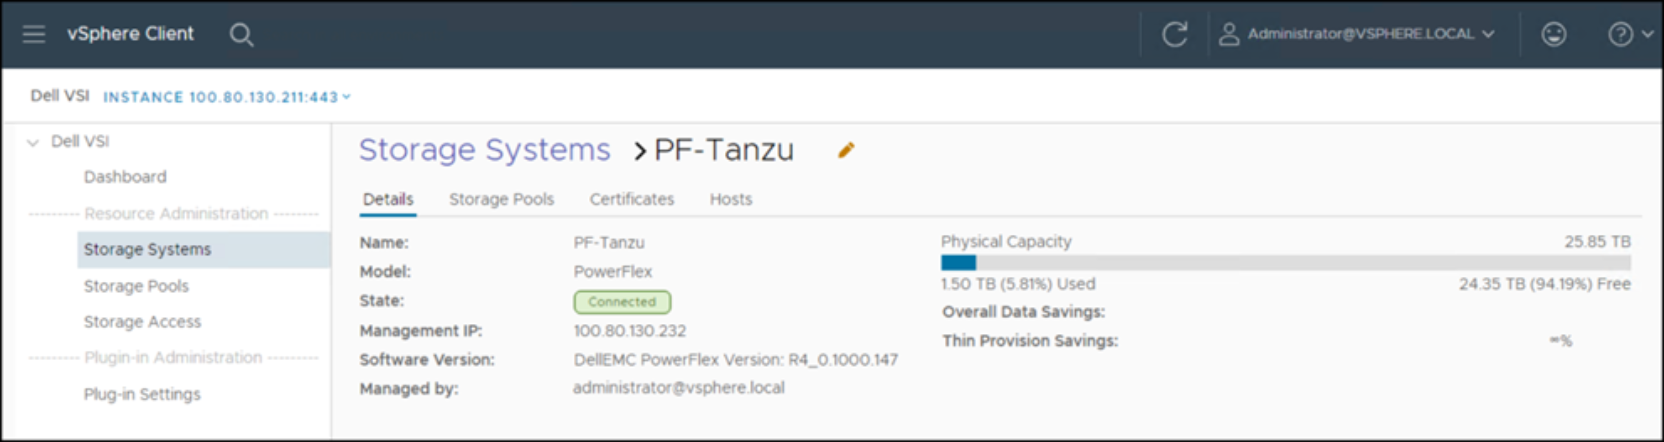 Dell VSI: Add PowerFlex storage system – PF-Tanzu